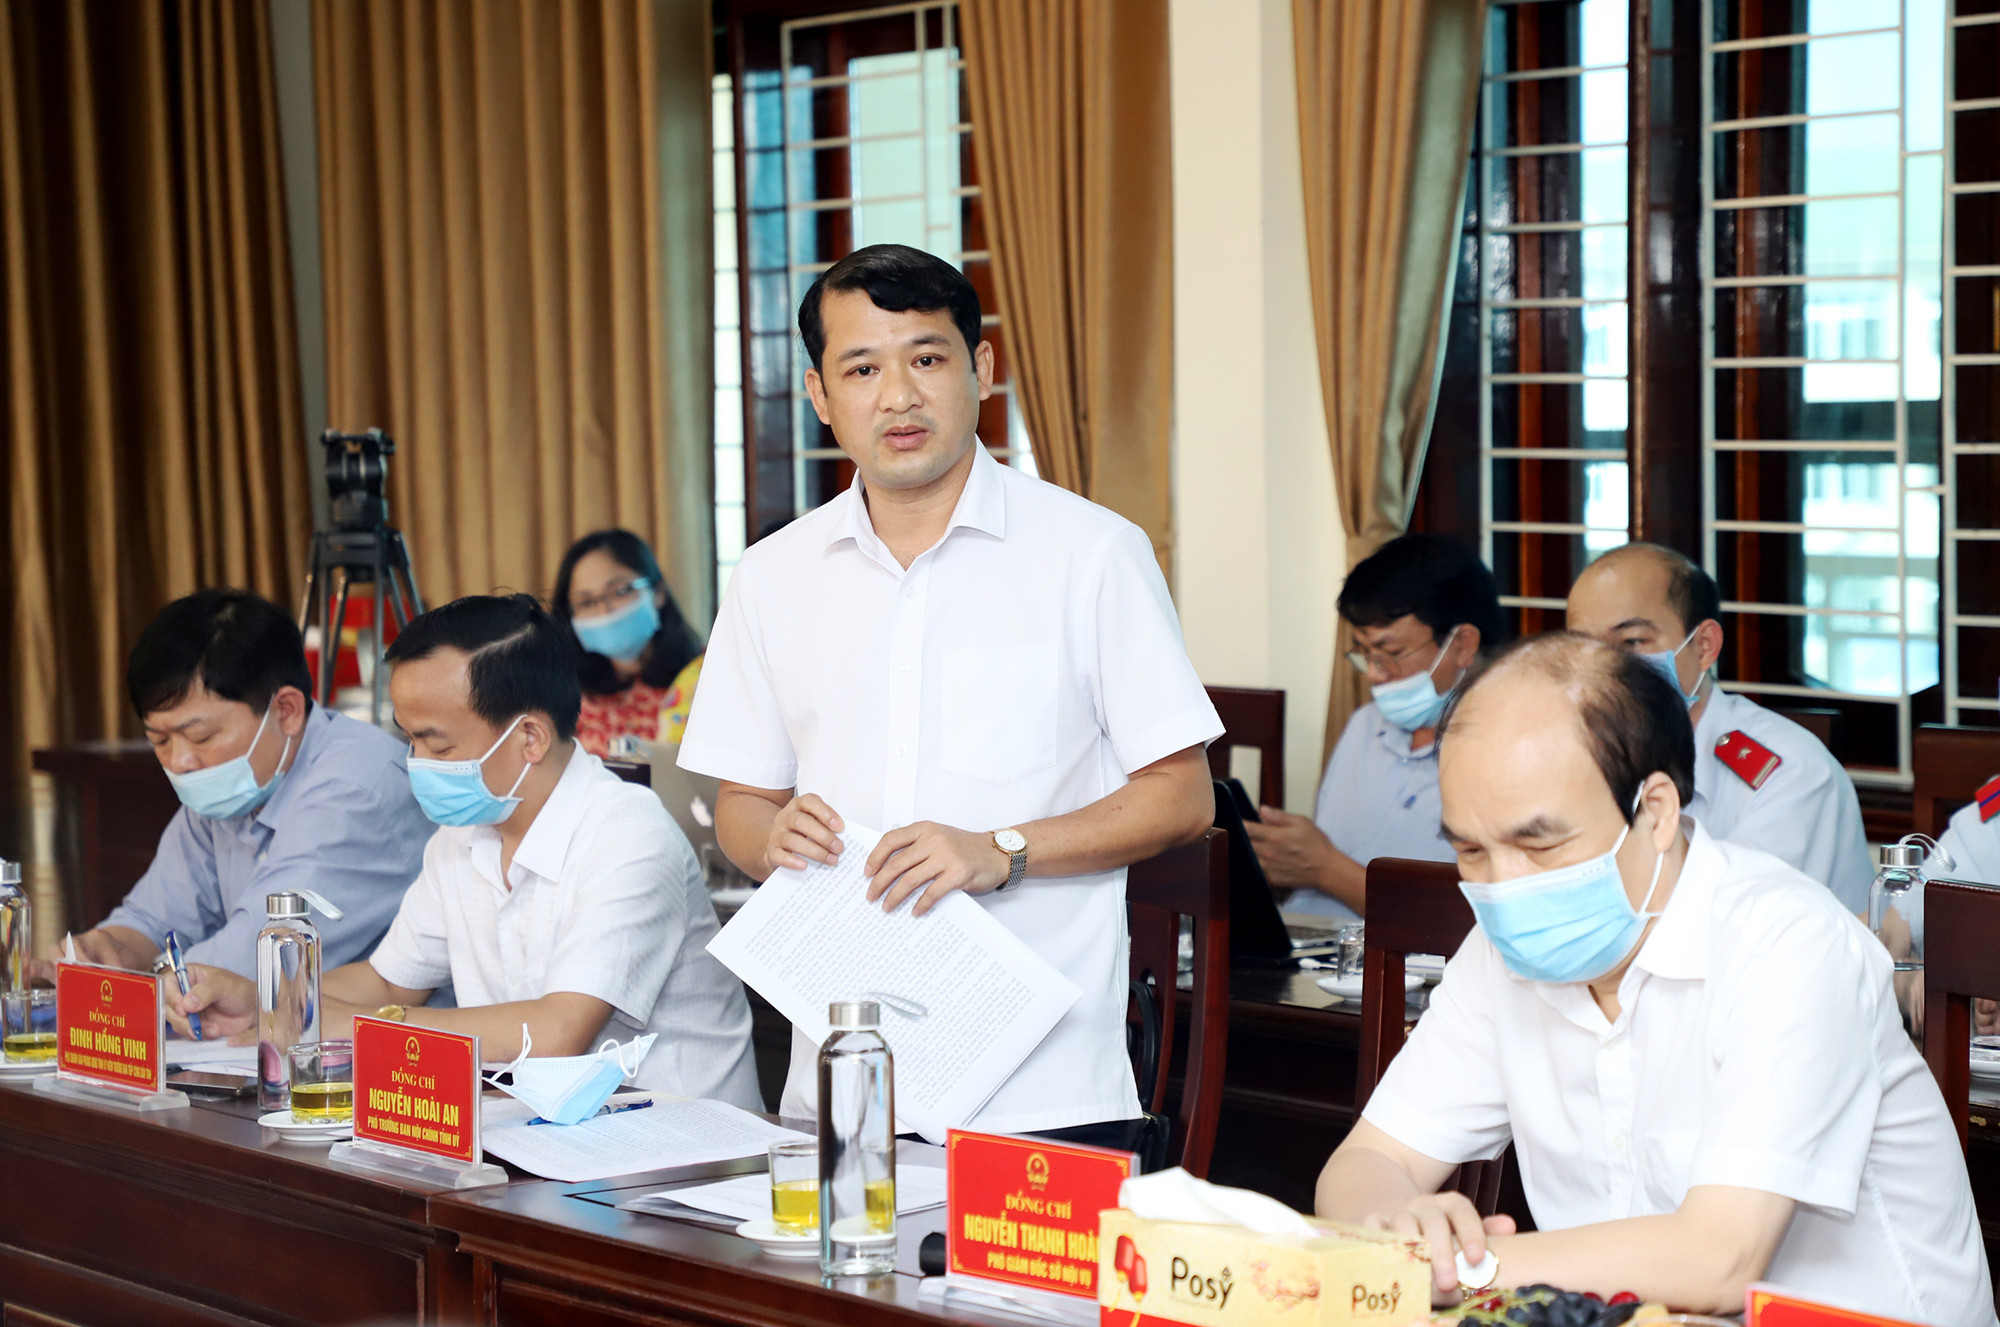 Đồng chí Nguyễn Hoài An - Phó trưởng Ban Nội chính Tỉnh ủy phát biểu tại buổi làm việc. Ảnh: Phạm Bằng